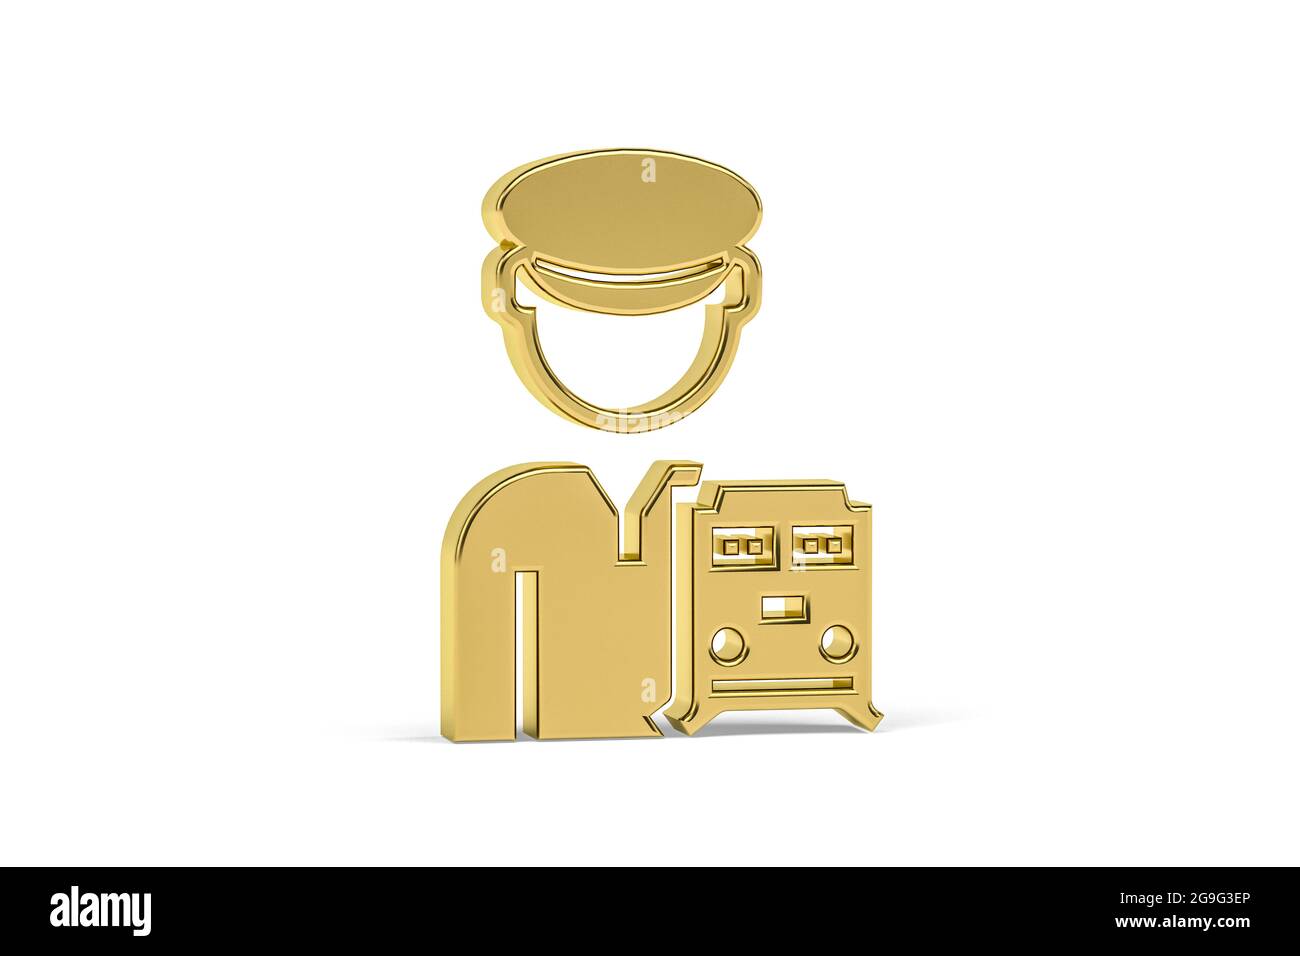 Goldenes 3d-Lokführer-Symbol auf weißem Hintergrund isoliert - 3D-Rendering Stockfoto